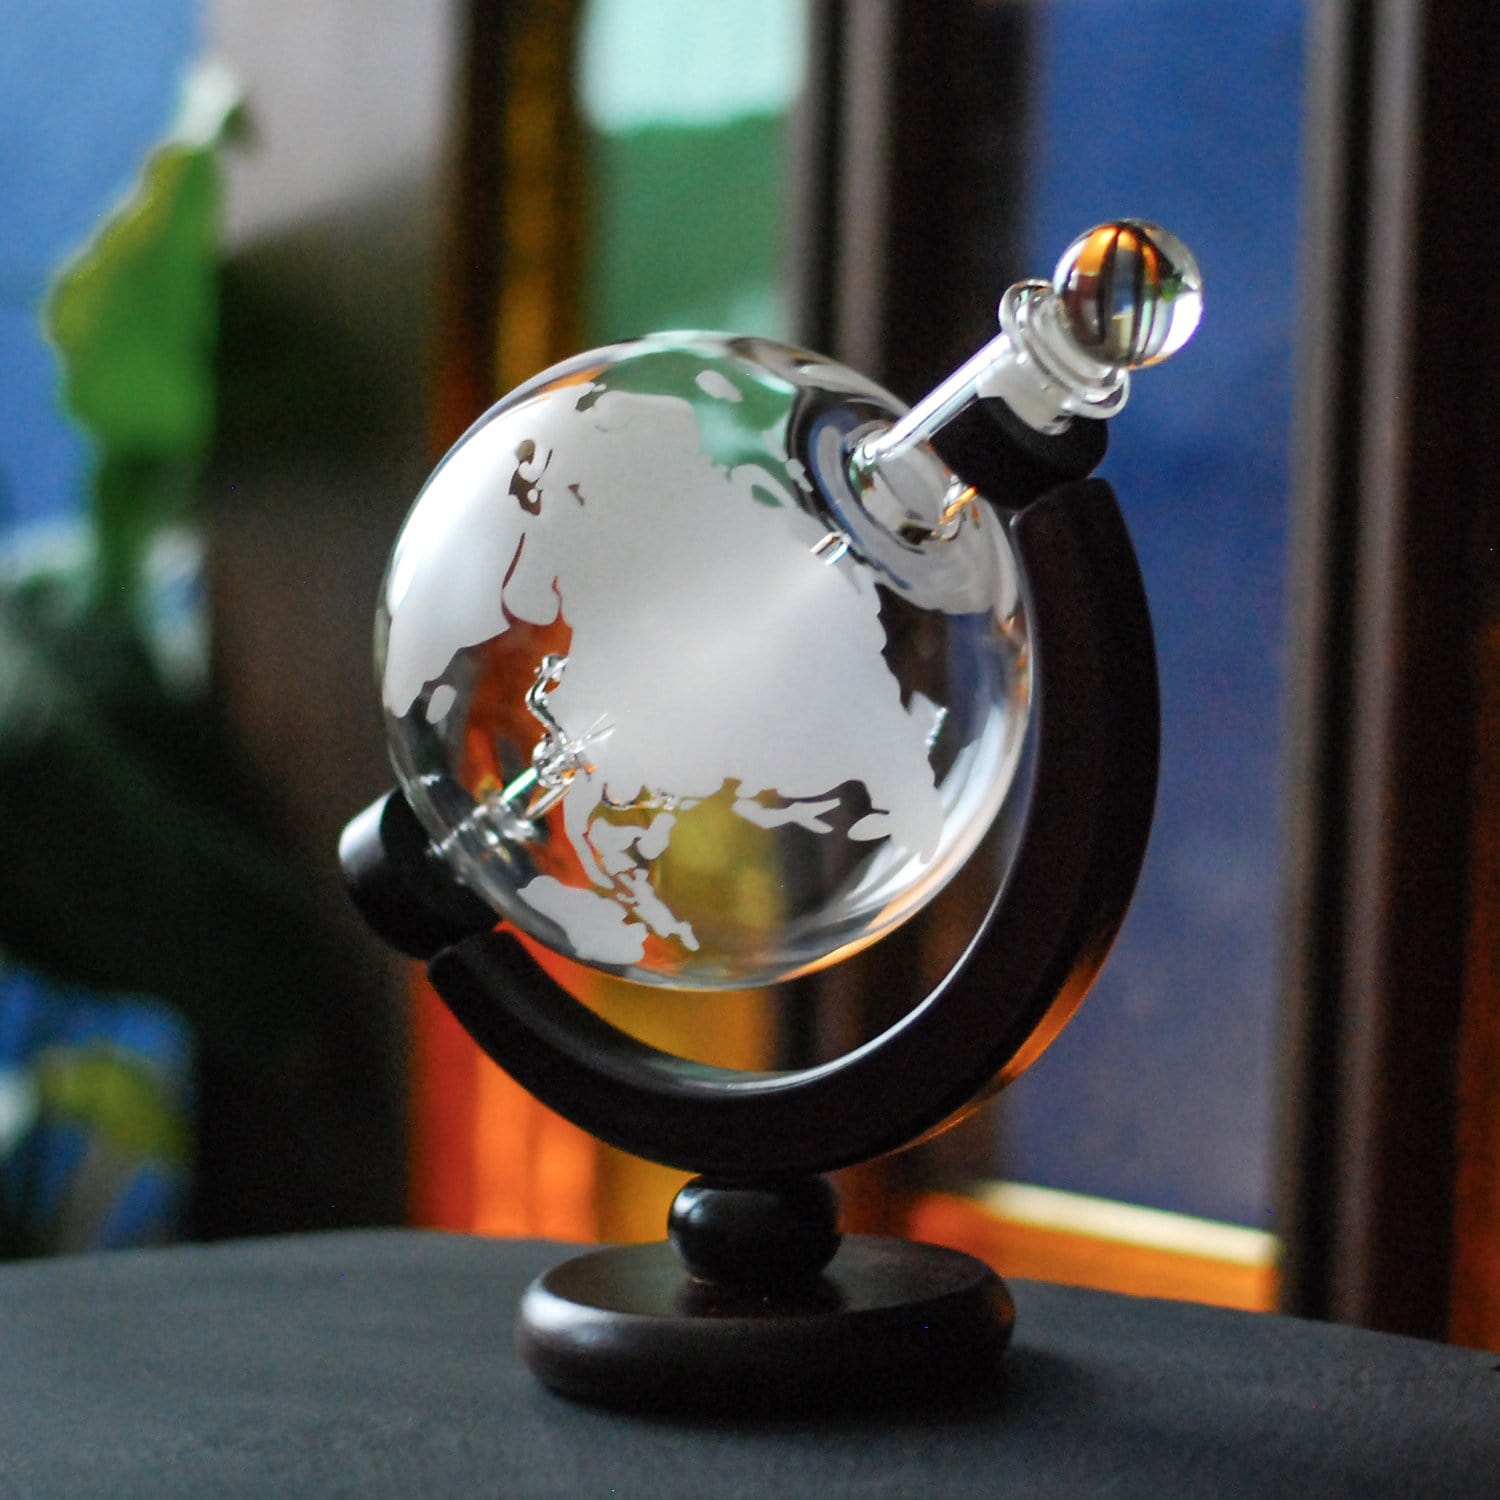 Glaskaraffe Globus mit Segelschiff aus Glas